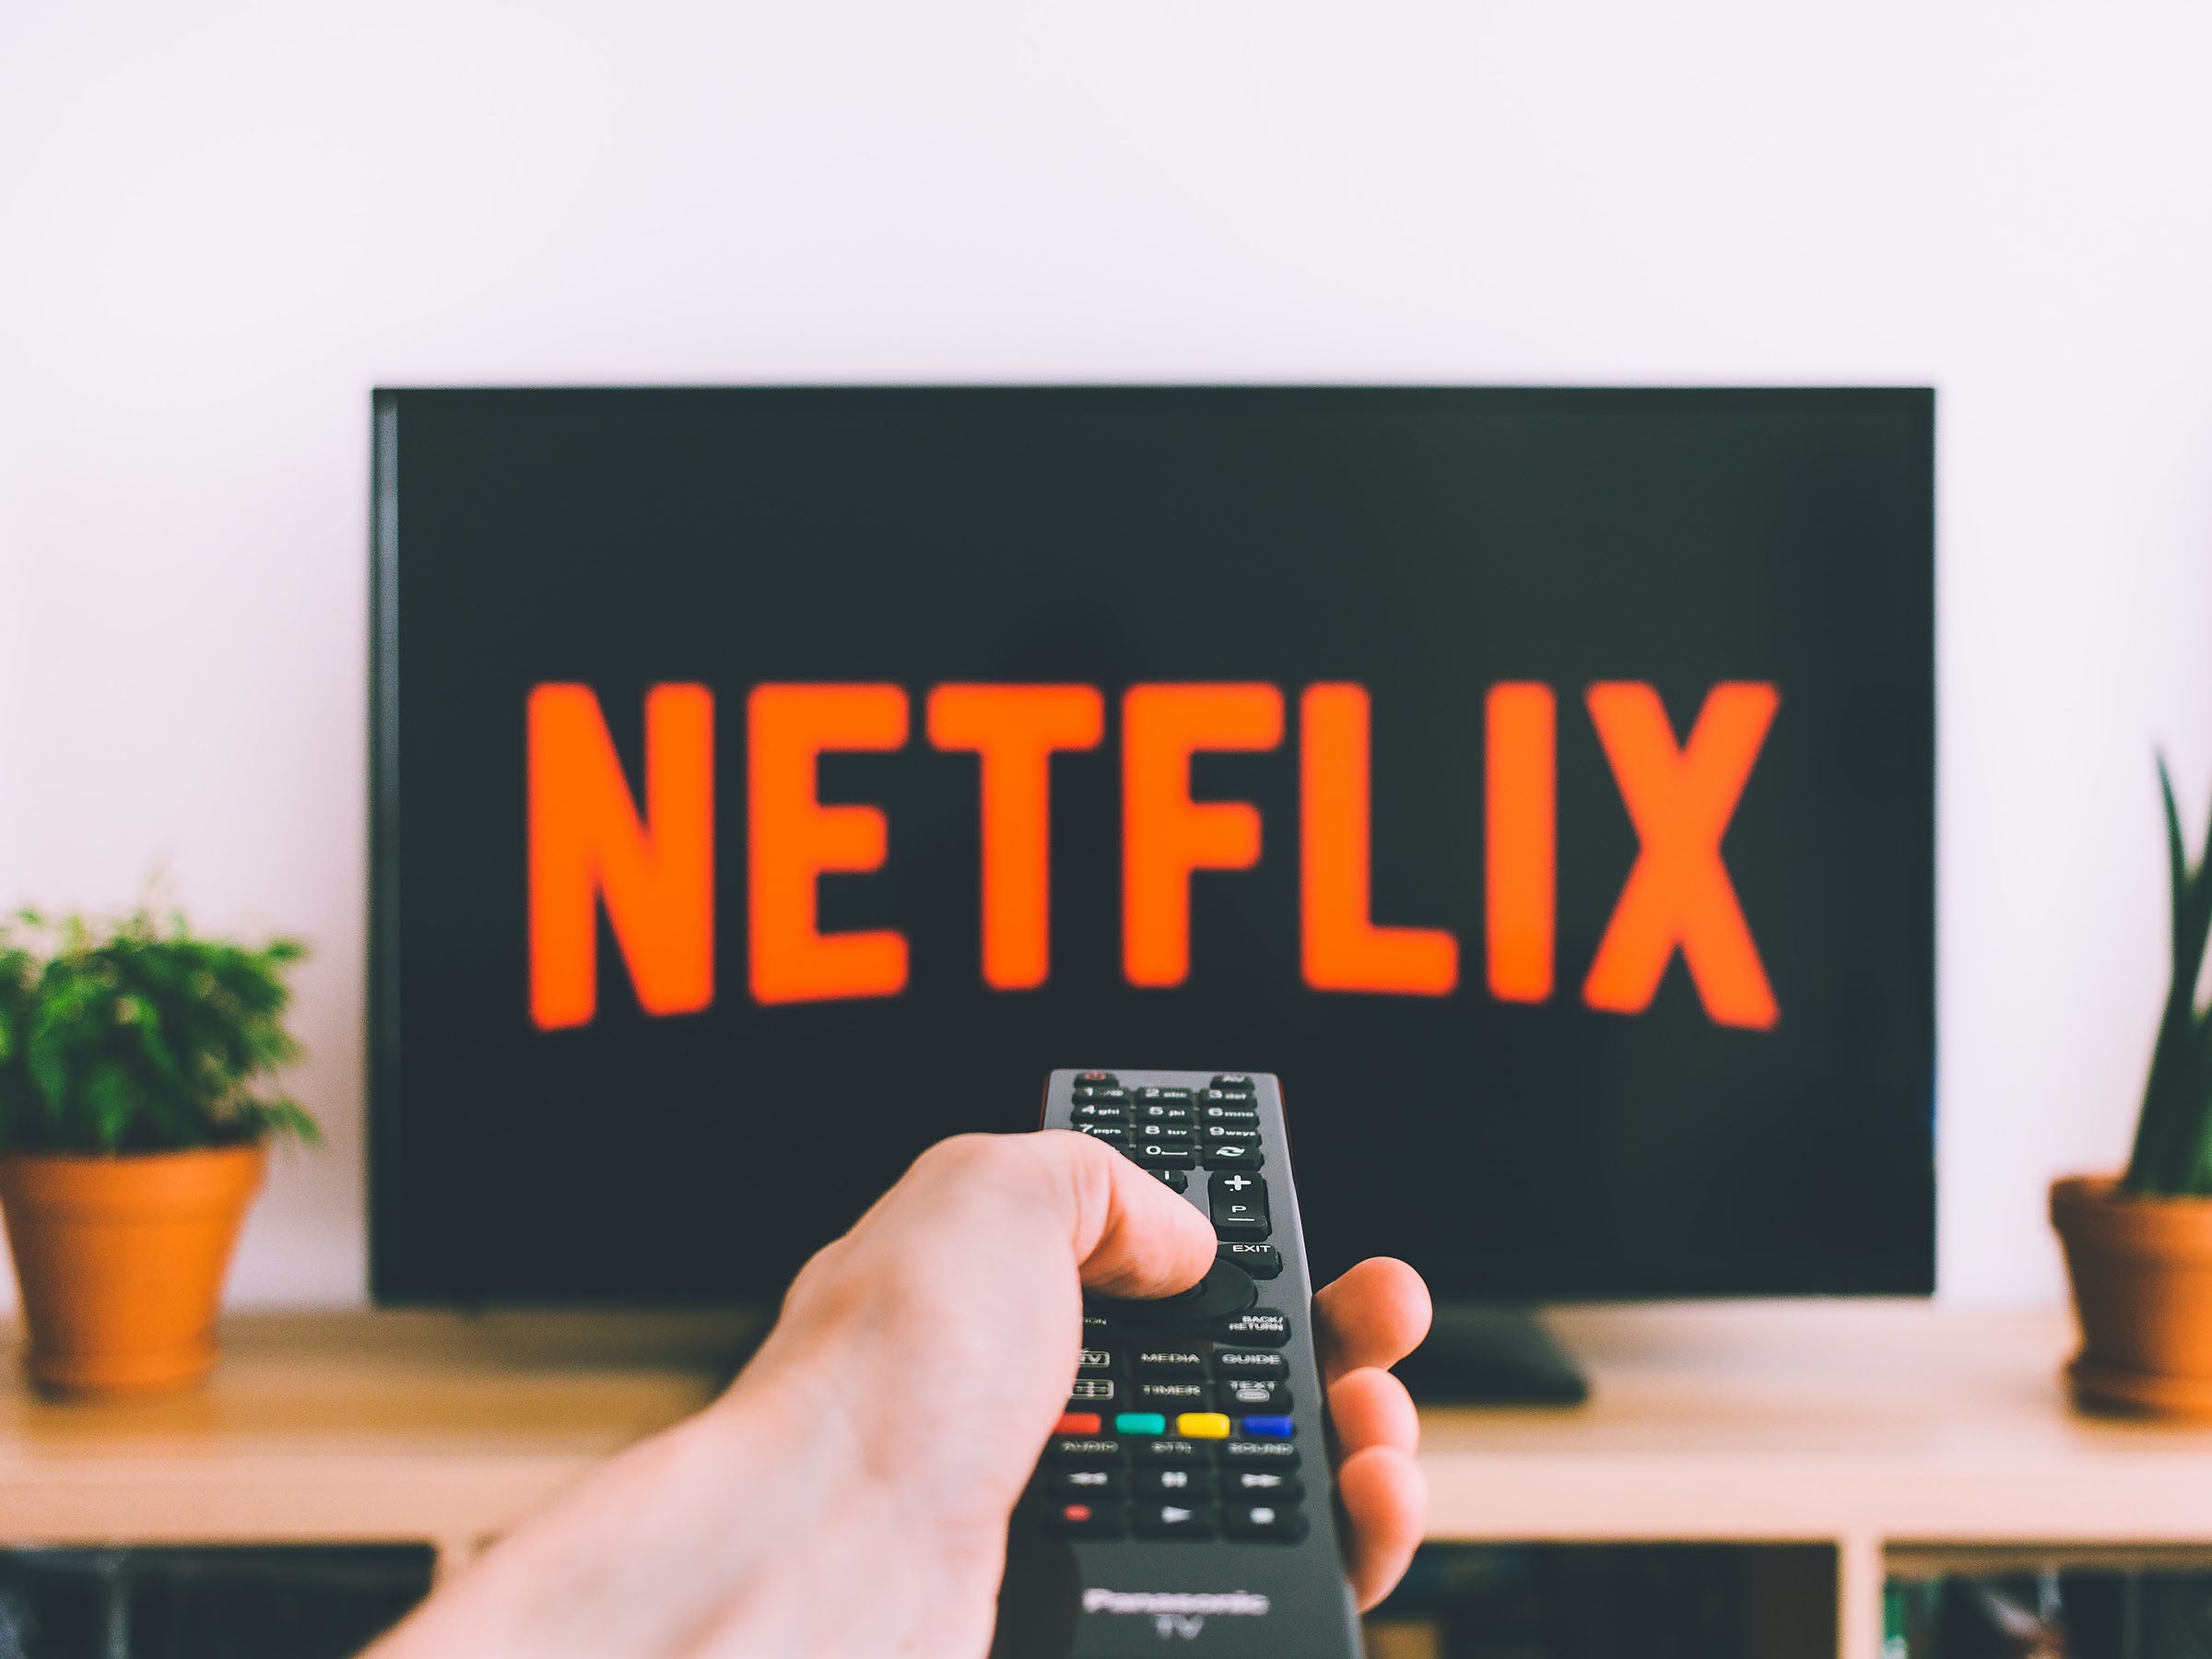 #Netflix liefert nach 2,5 Jahren endlich Nachschub für beliebtes Serien-Franchise